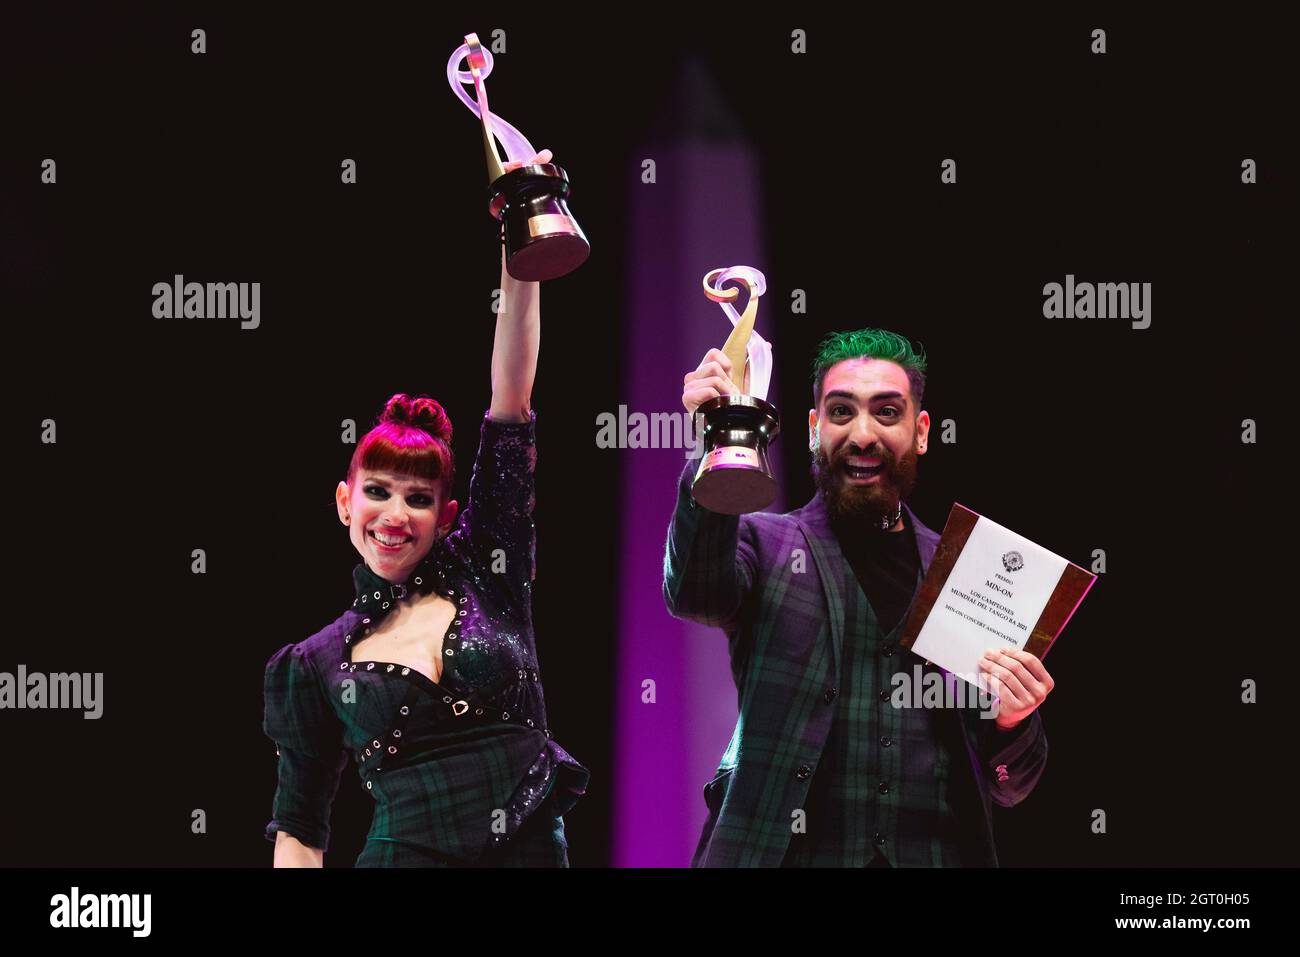 25 de septiembre de 2021, Argentina, Buenos Aires: Emmanuel Casal y Yanina Muzyka celebran después de ganar el primer lugar en la Final del Escenario Tango. Foto de stock